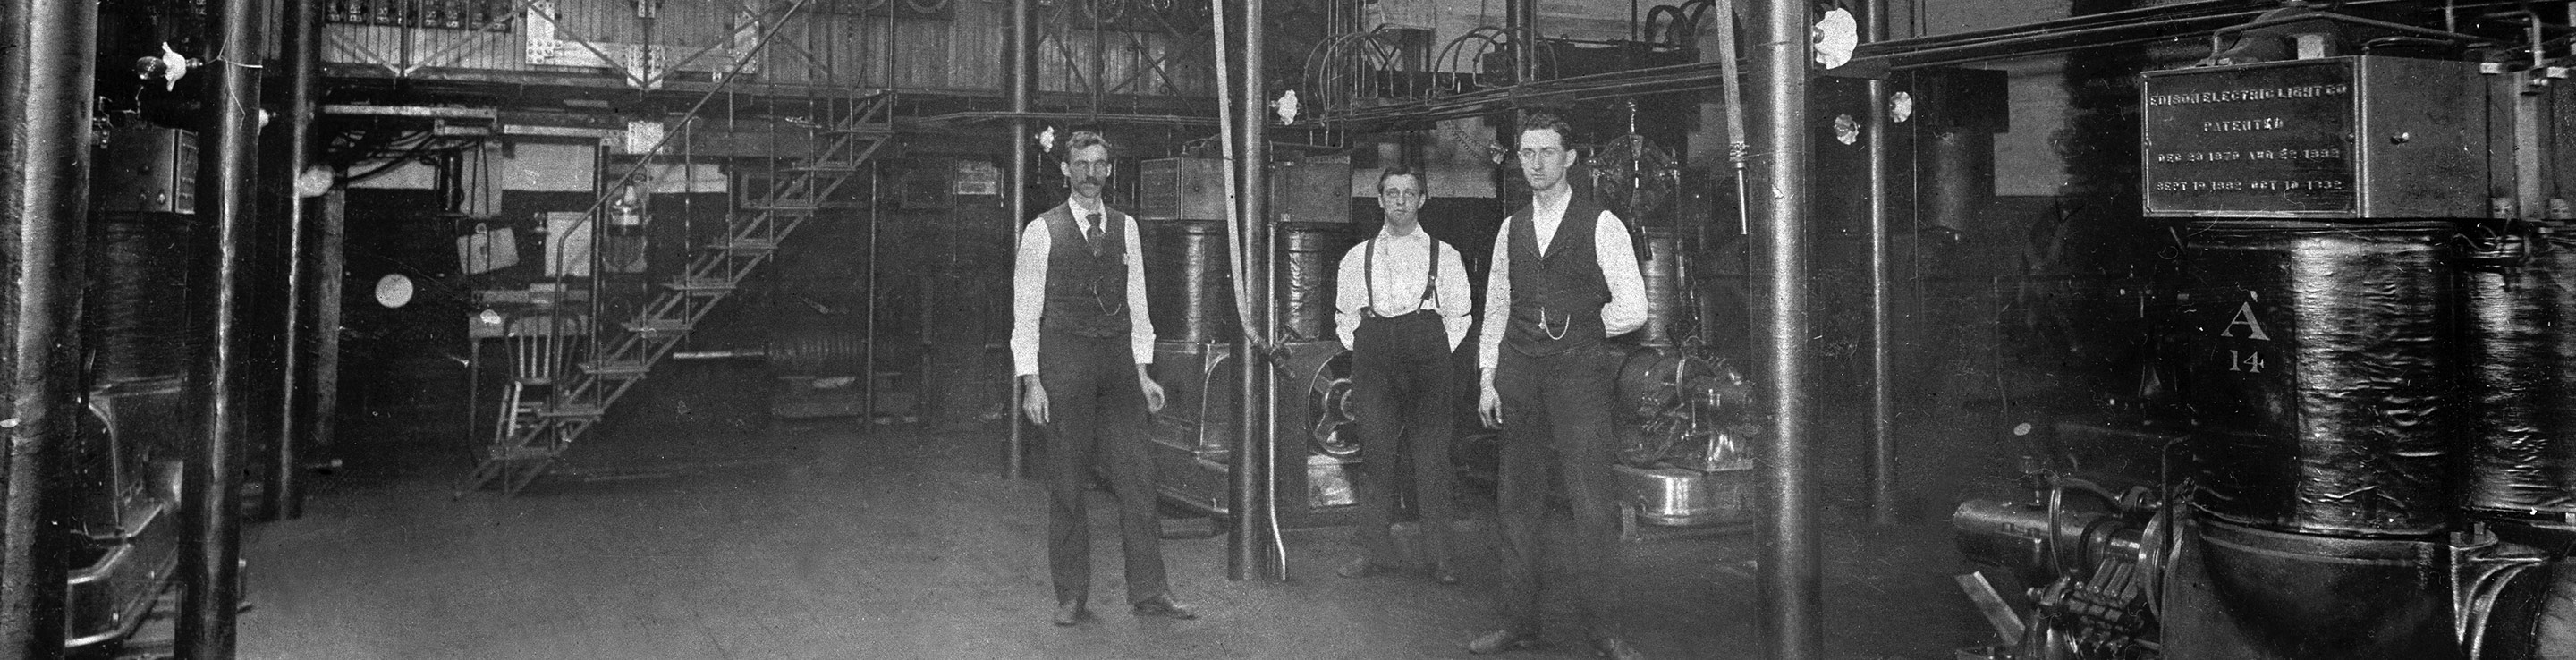 Henry Ford at Edison illuminating company 